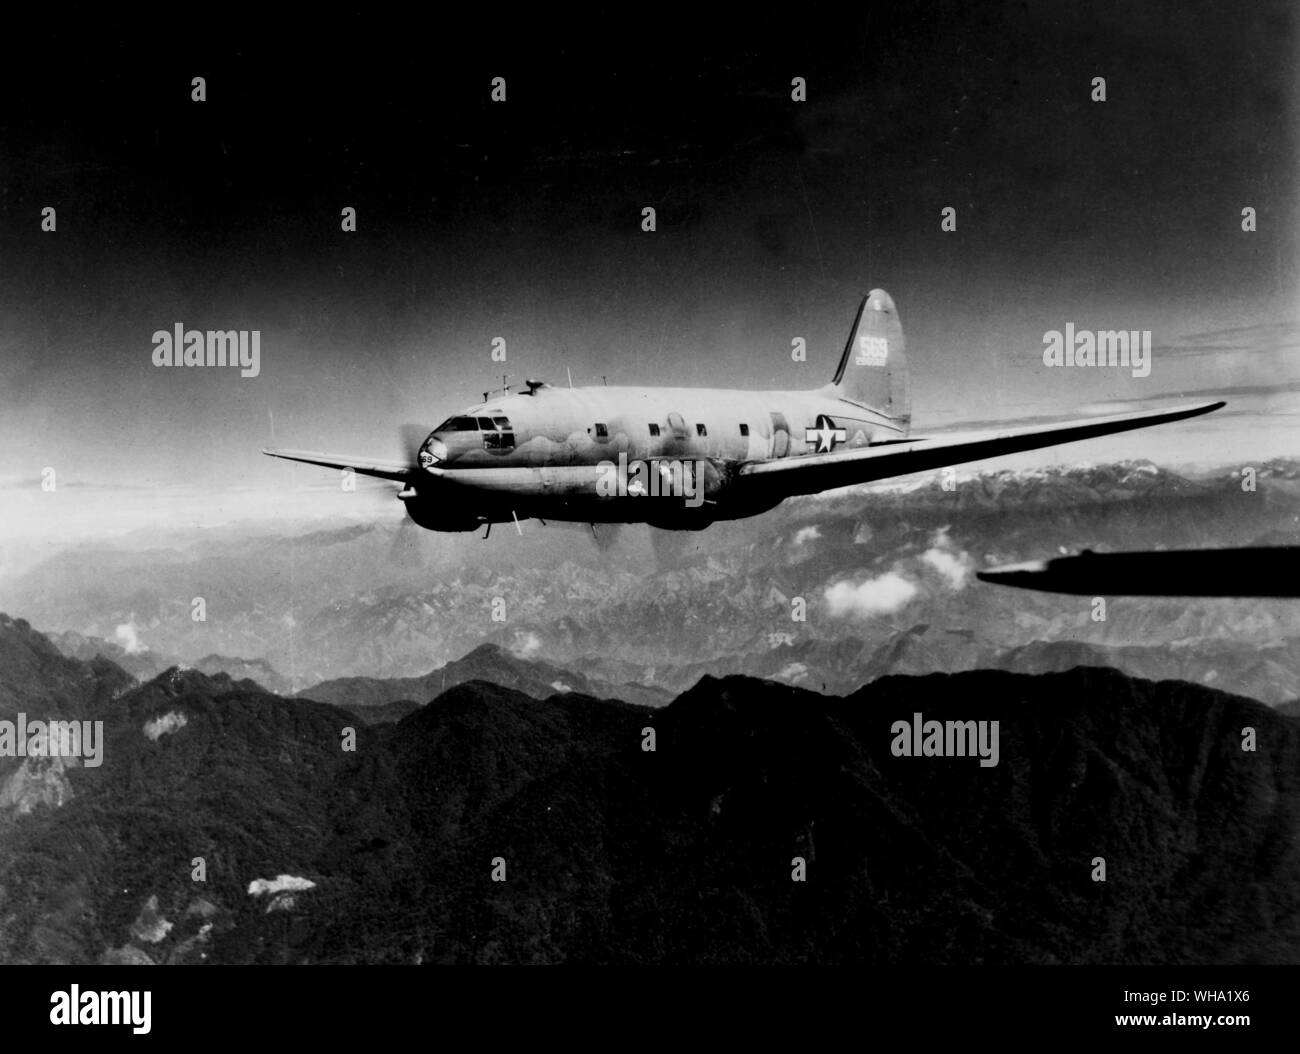 WW2: Curtiss C-46 Commando über dem Feuer Grat der Buckel auf dem Weg nach China entlang der Routen des India-China Division, Luftverkehr. Stockfoto